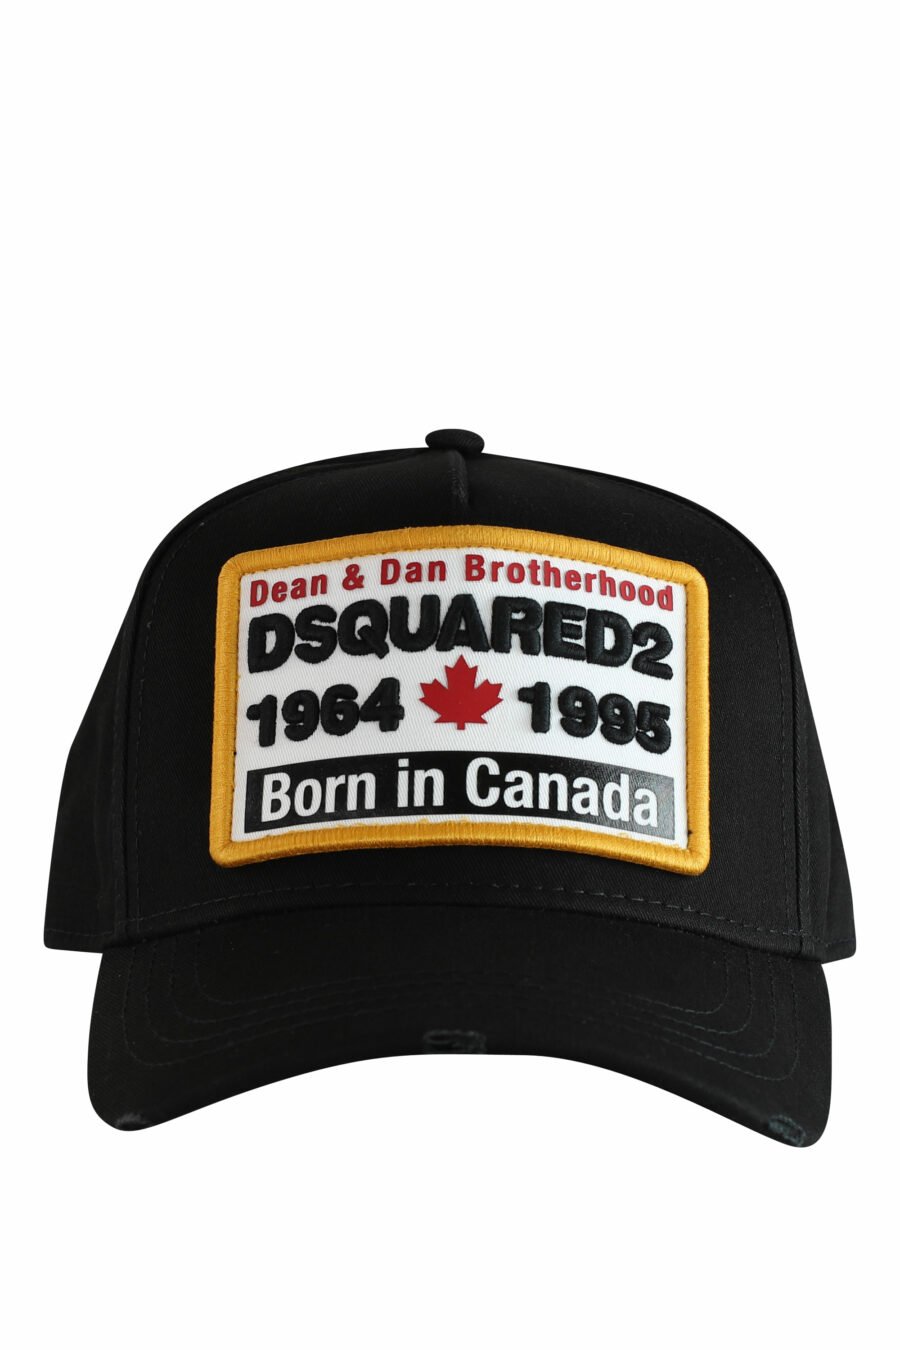 Schwarze Kappe mit weißem Rahmen mit gelbem Logo und Details - IMG 1240